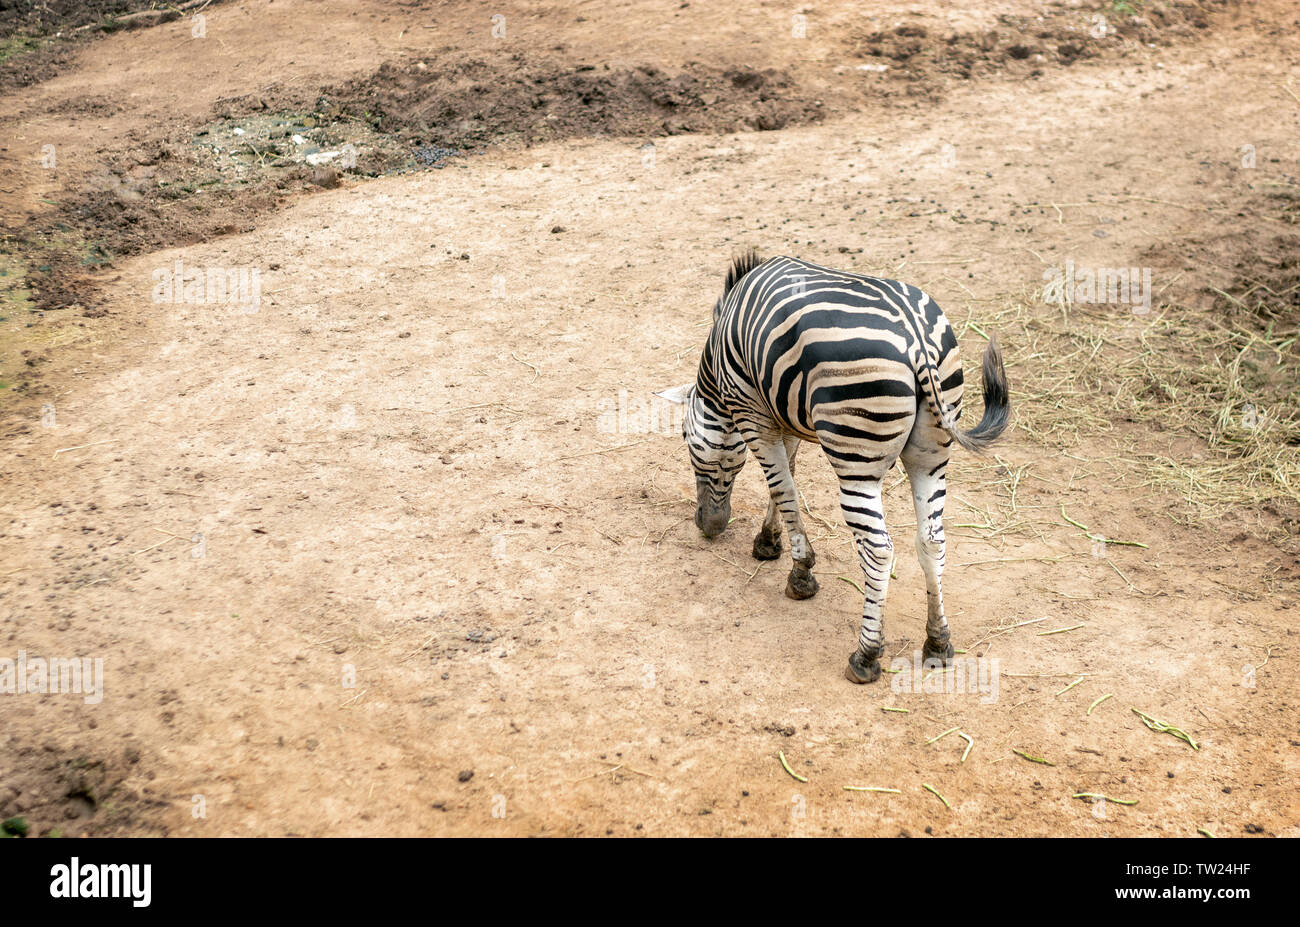 Zebra animale mammifero allo zoo fauna selvatica in natura Foto Stock